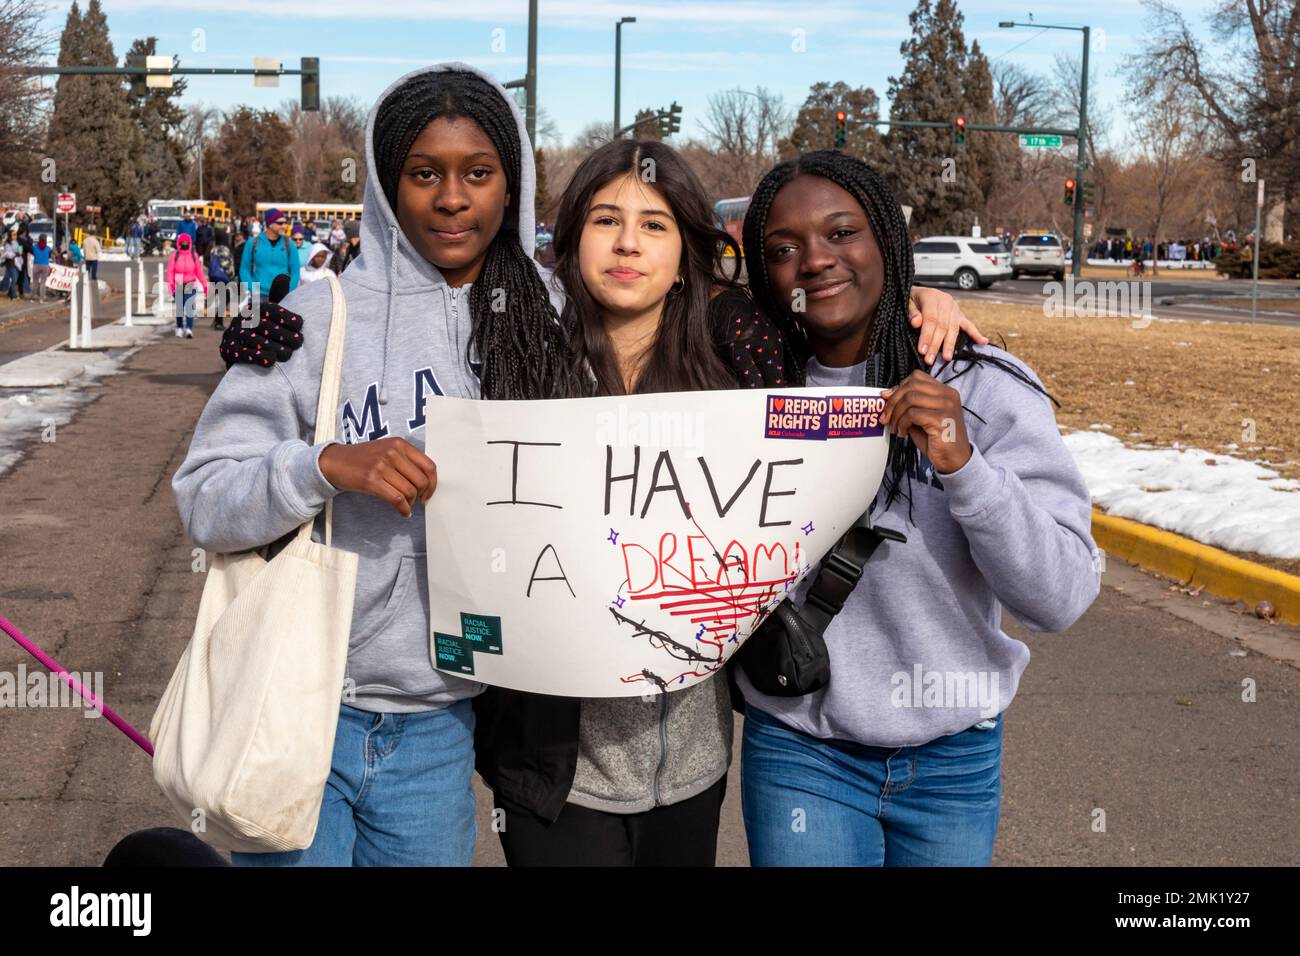 Denver, Colorado - die jährliche Martin Luther King Day Marade (märz + Parade). Drei junge Frauen tragen ein "Ich habe einen Traum" -Schild. Stockfoto